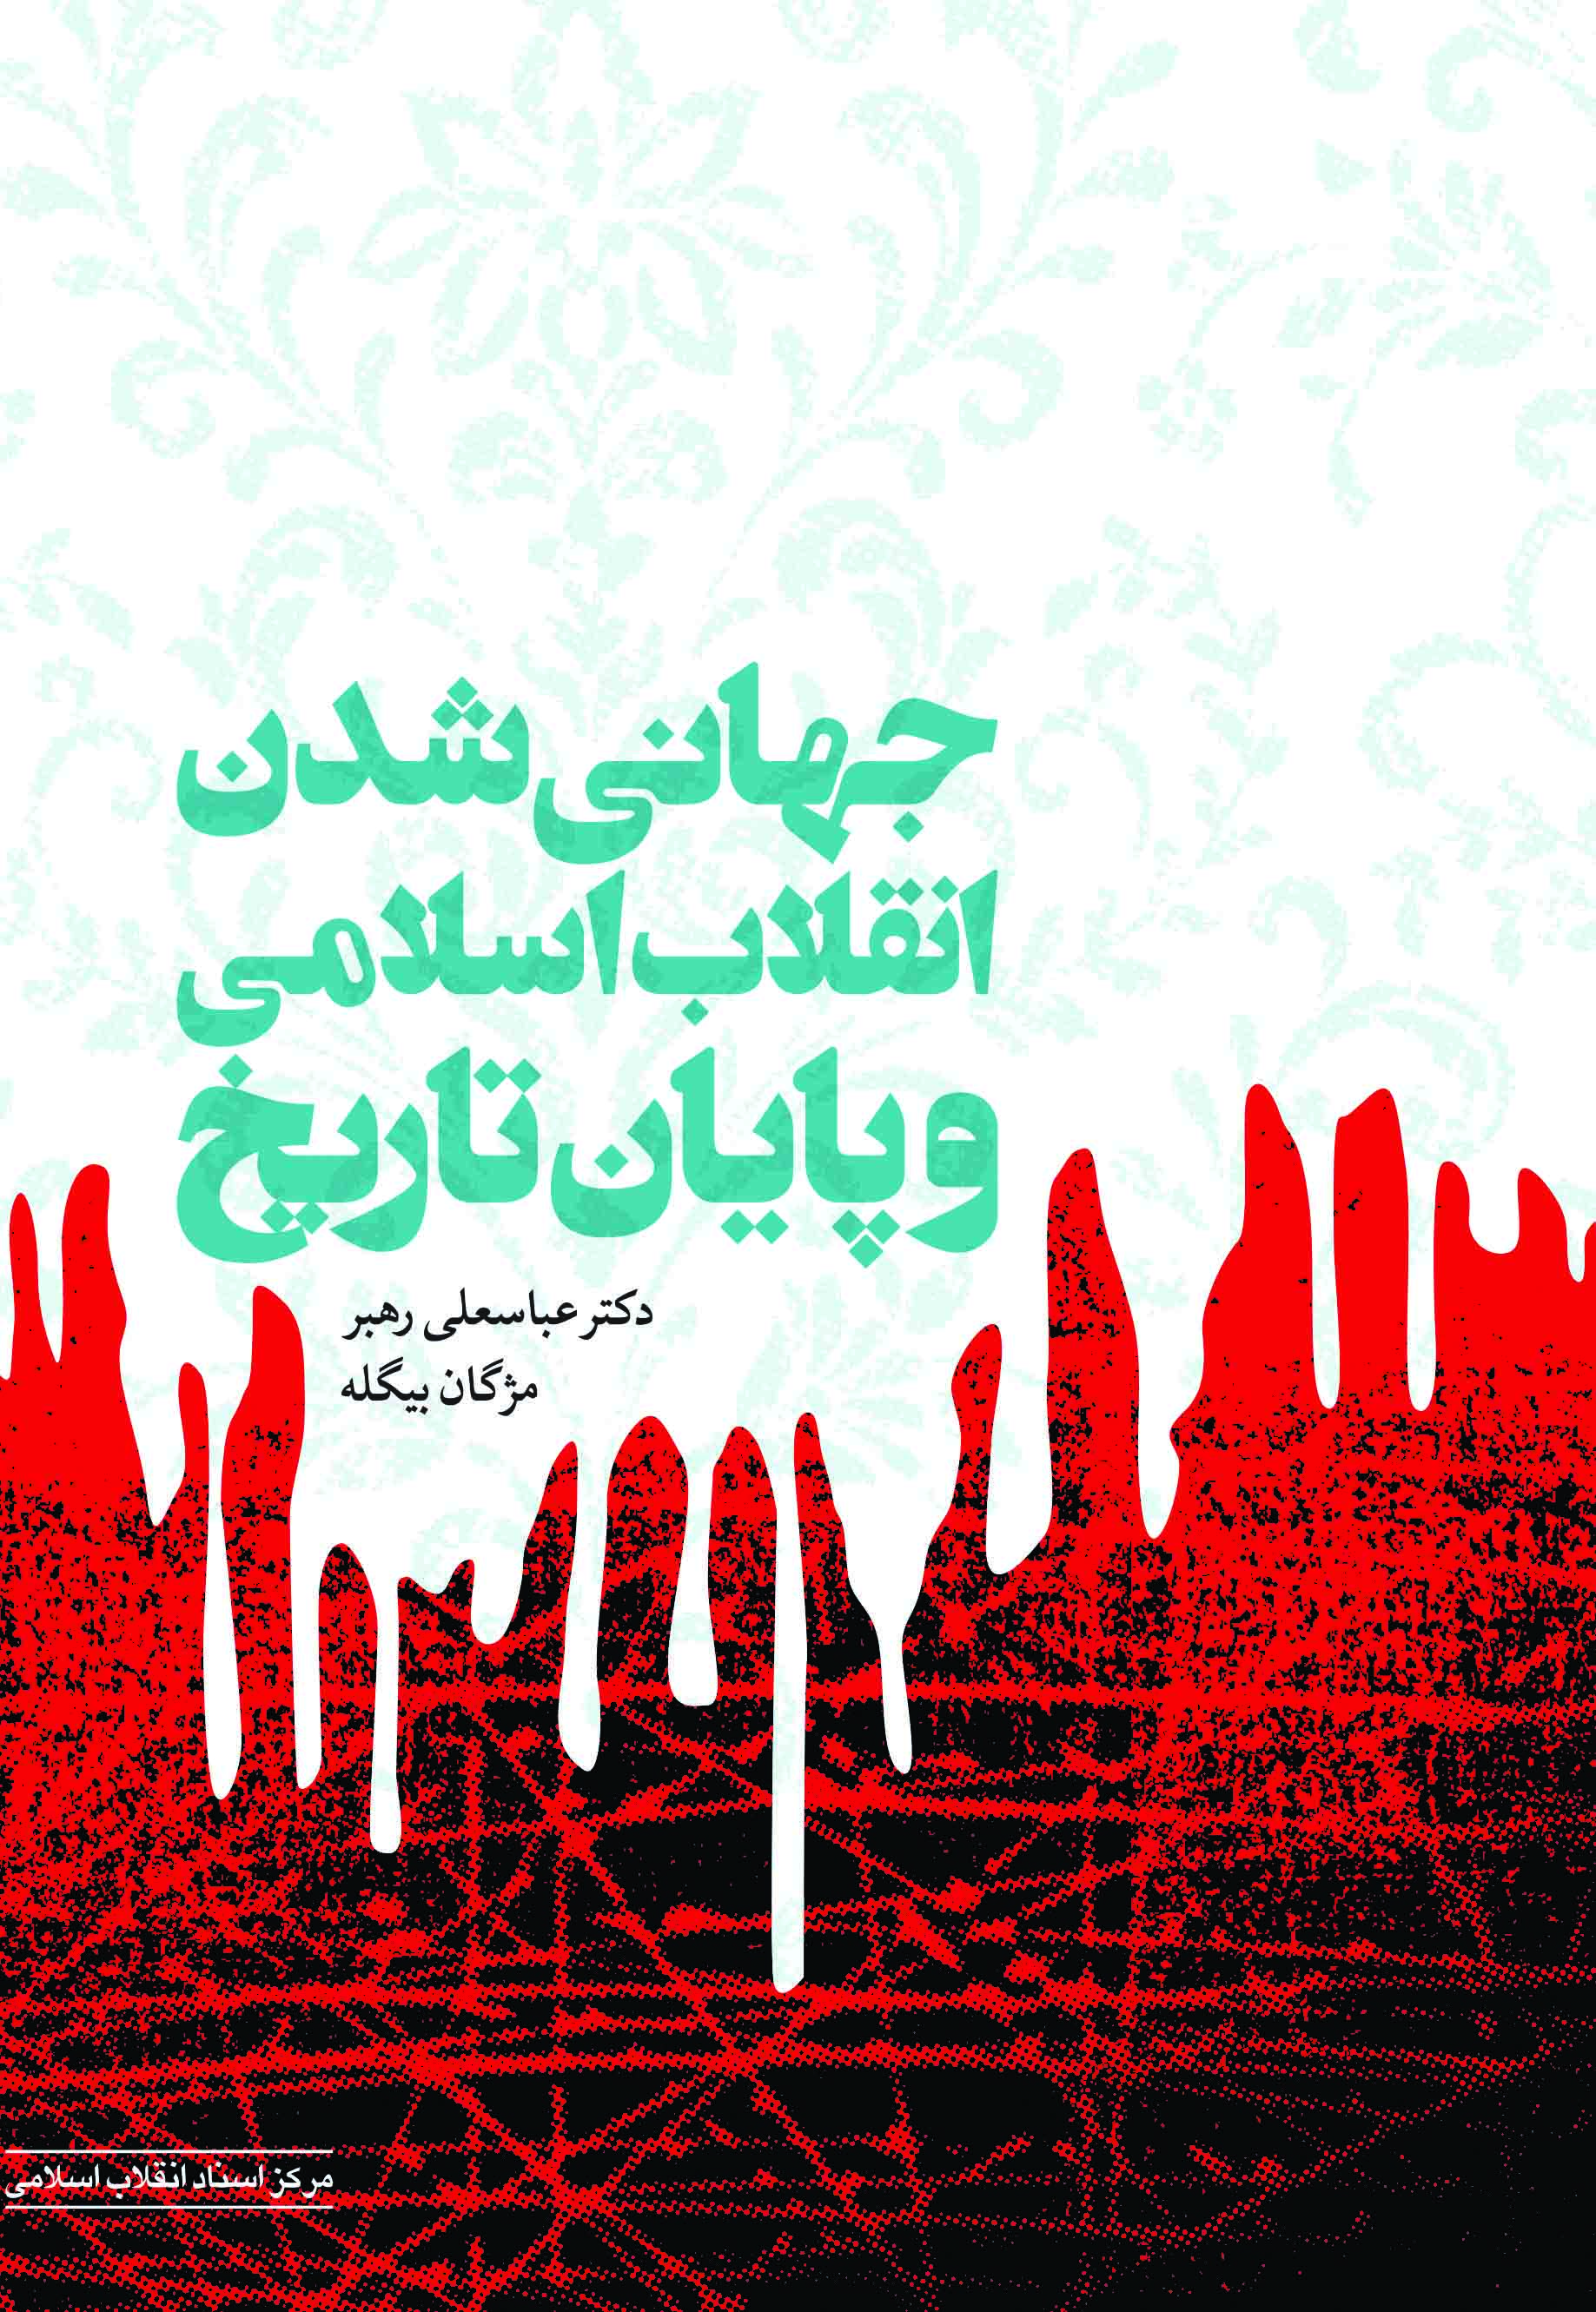 «جهانی شدن انقلاب اسلامی و پایان تاریخ» وارد بازار کتاب شد